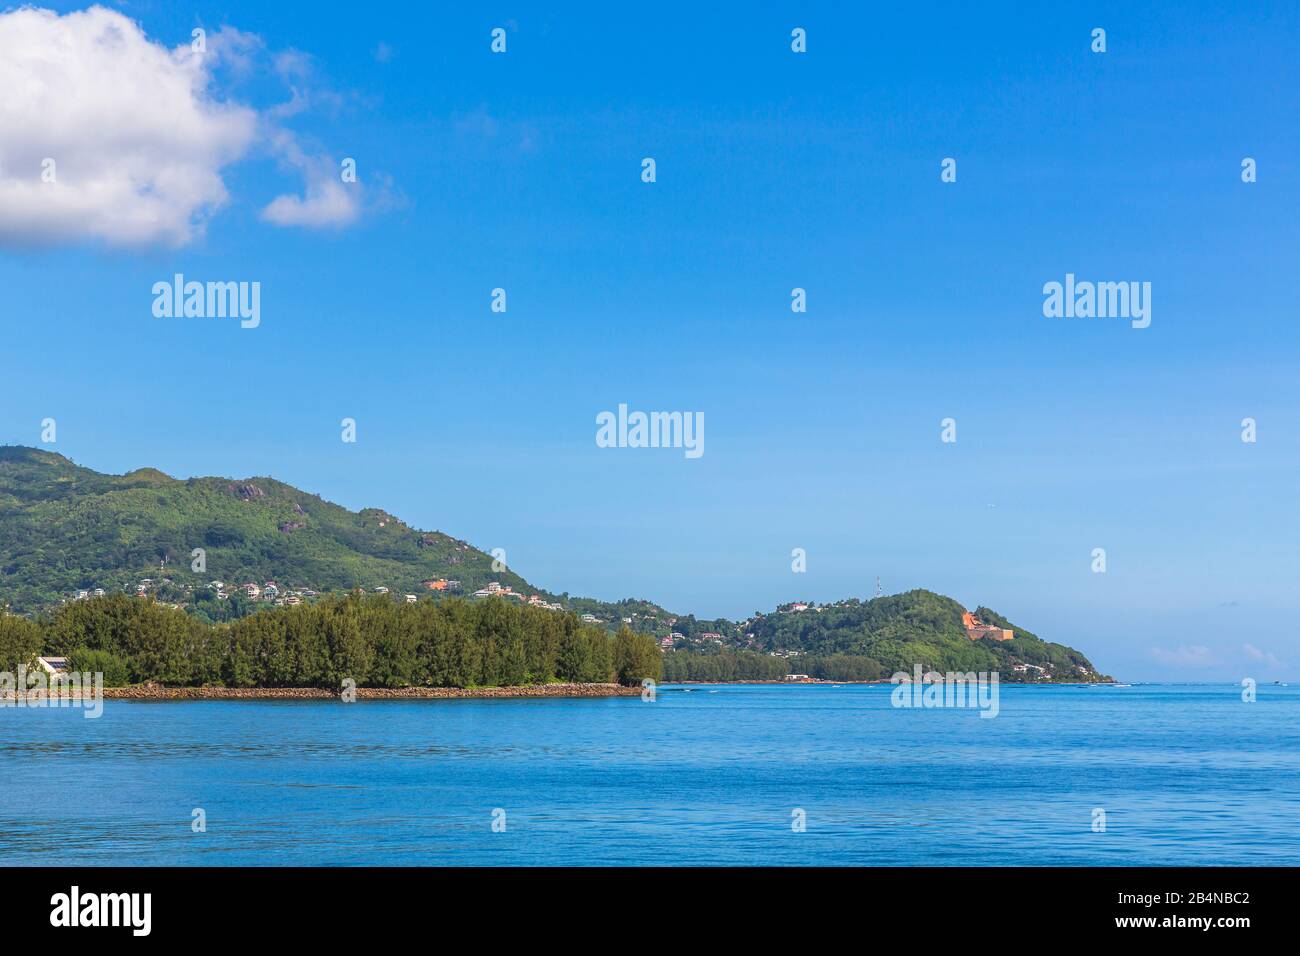 Insel Mahe, Seychelles, Indischer Ozean, Afrika Foto de stock